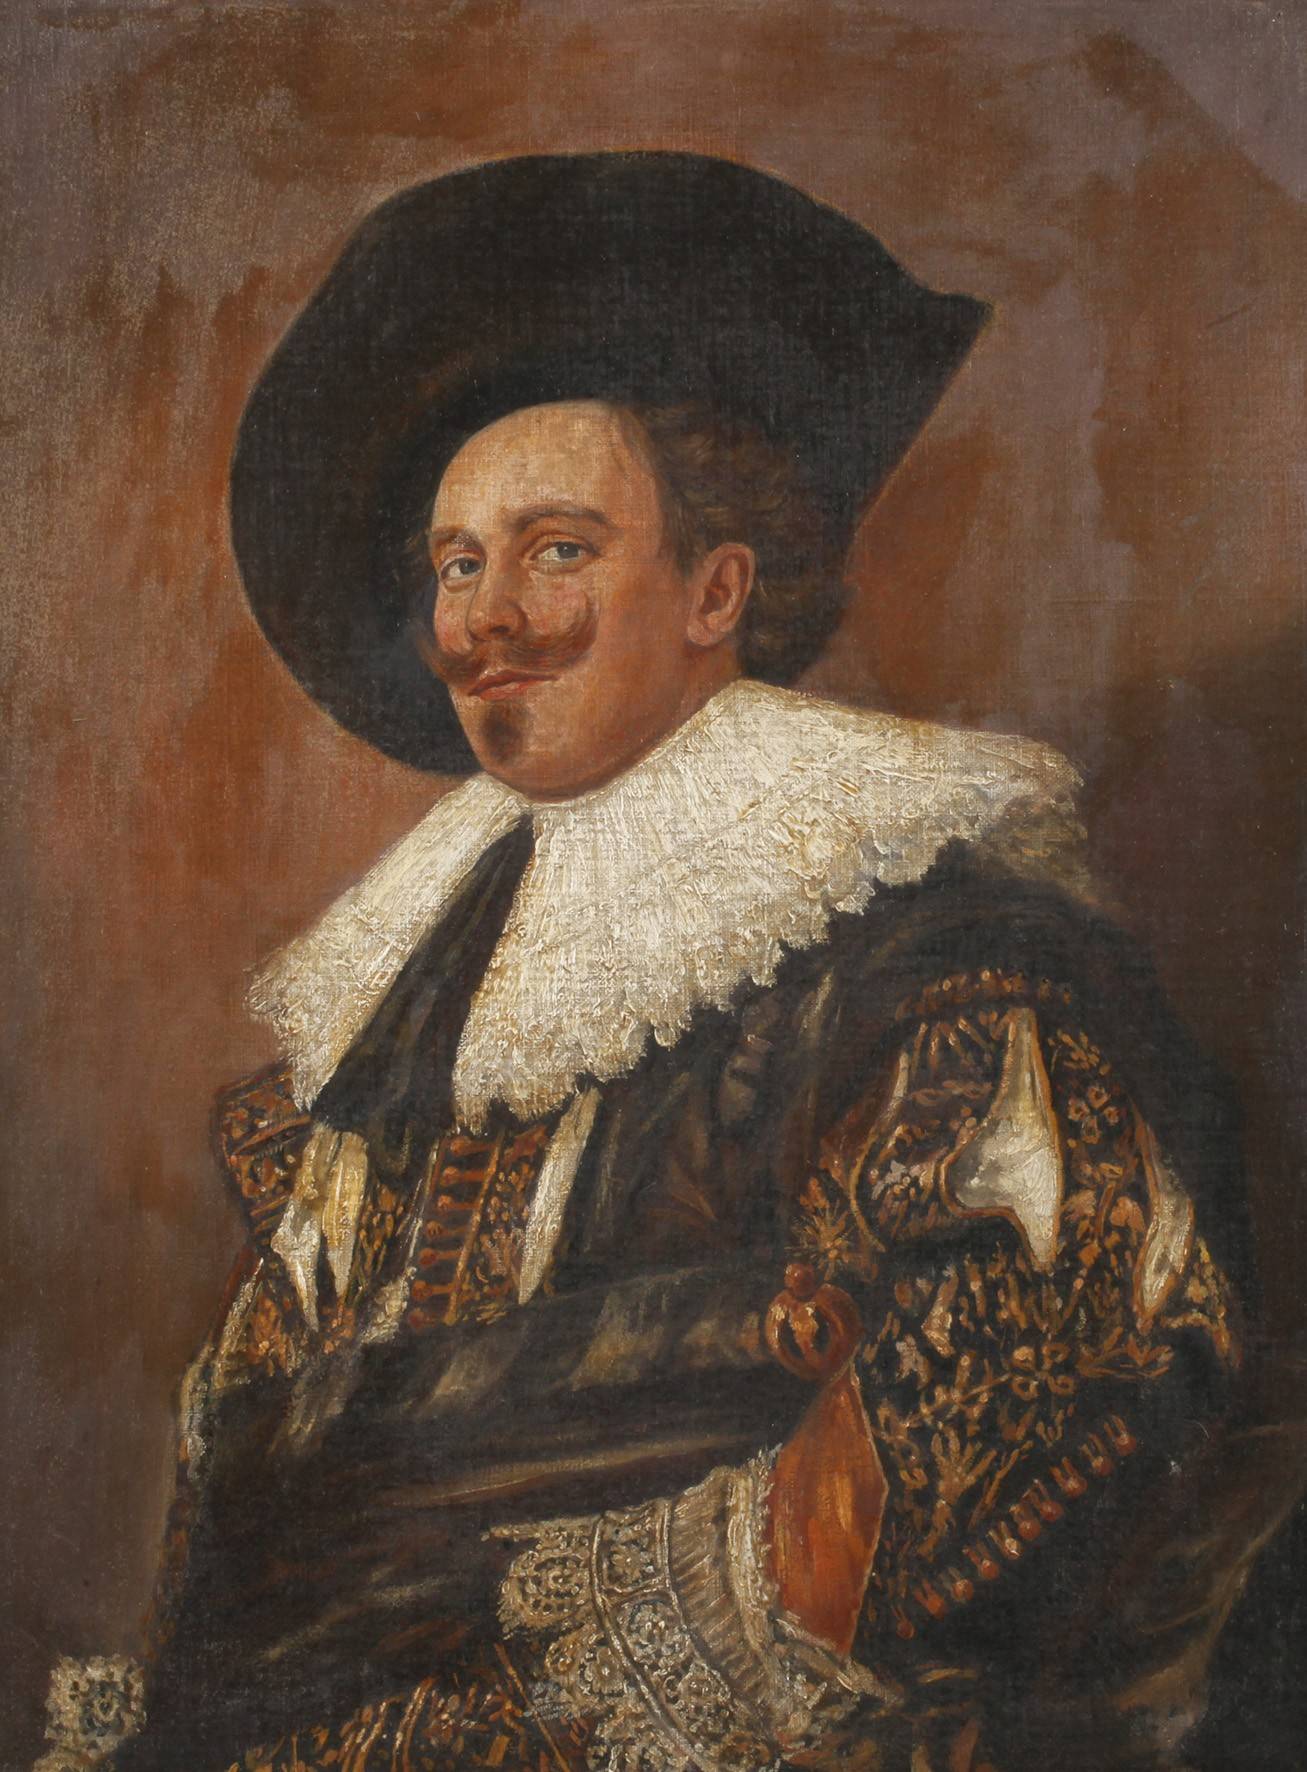 nach Frans Hals, ”Der lachende Kavalier”